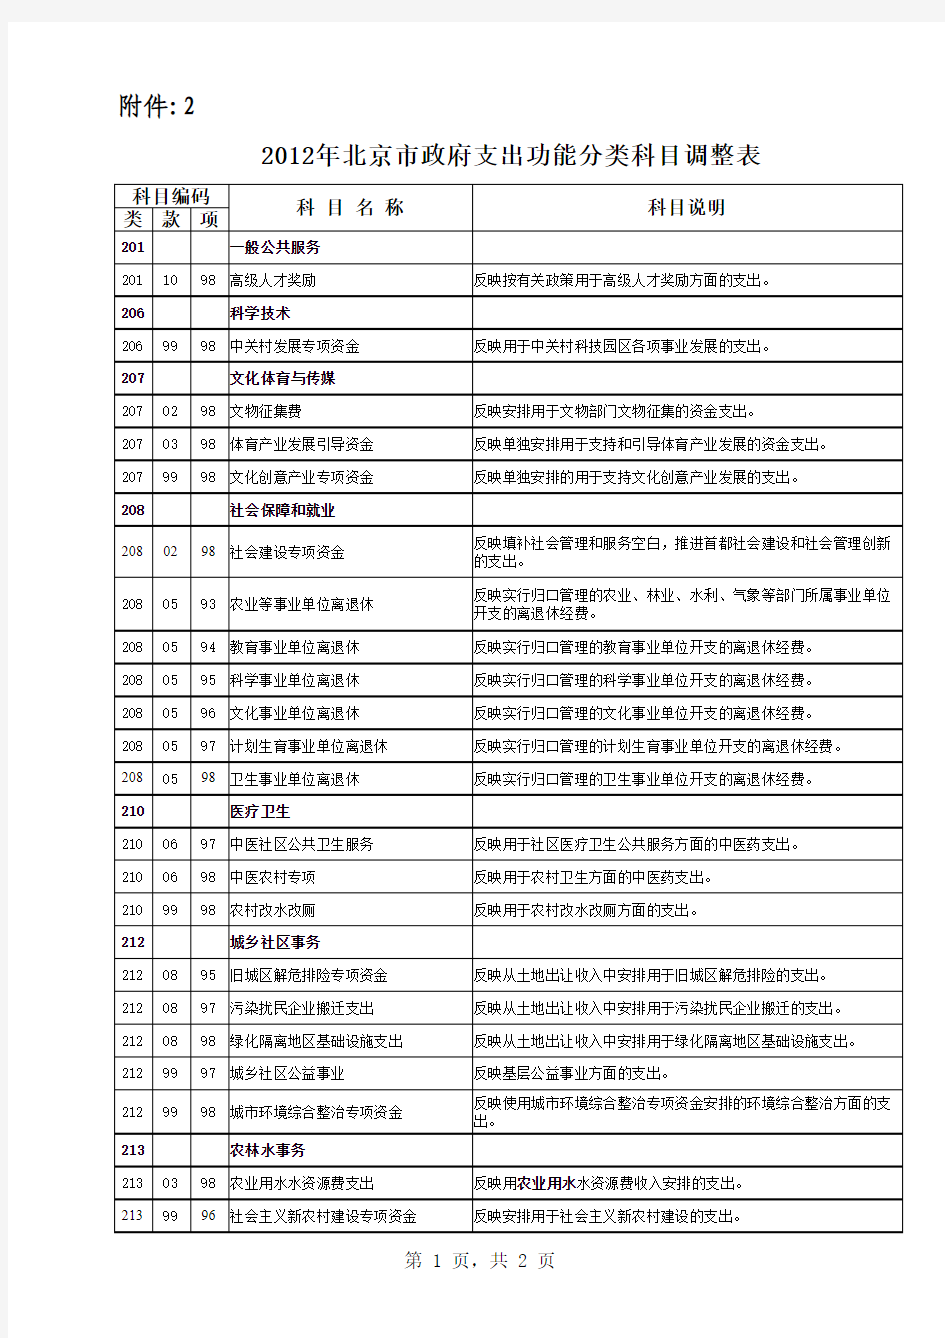 2012年北京市政府支出功能分类科目调整表